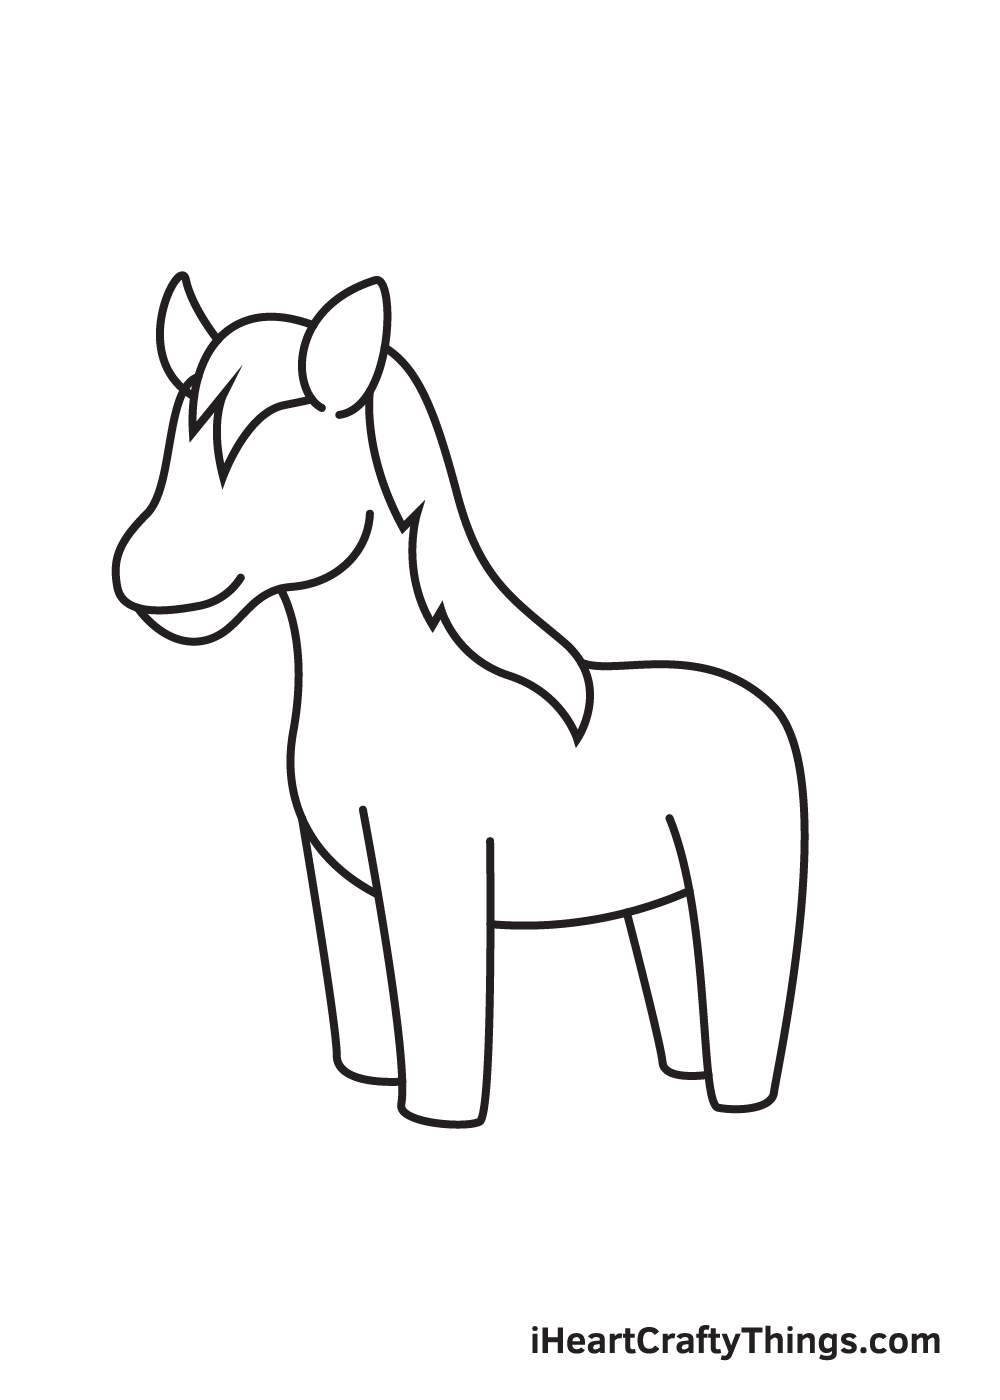 Hướng dẫn cách vẽ con ngựa đơn giản với 9 bước cơ bản